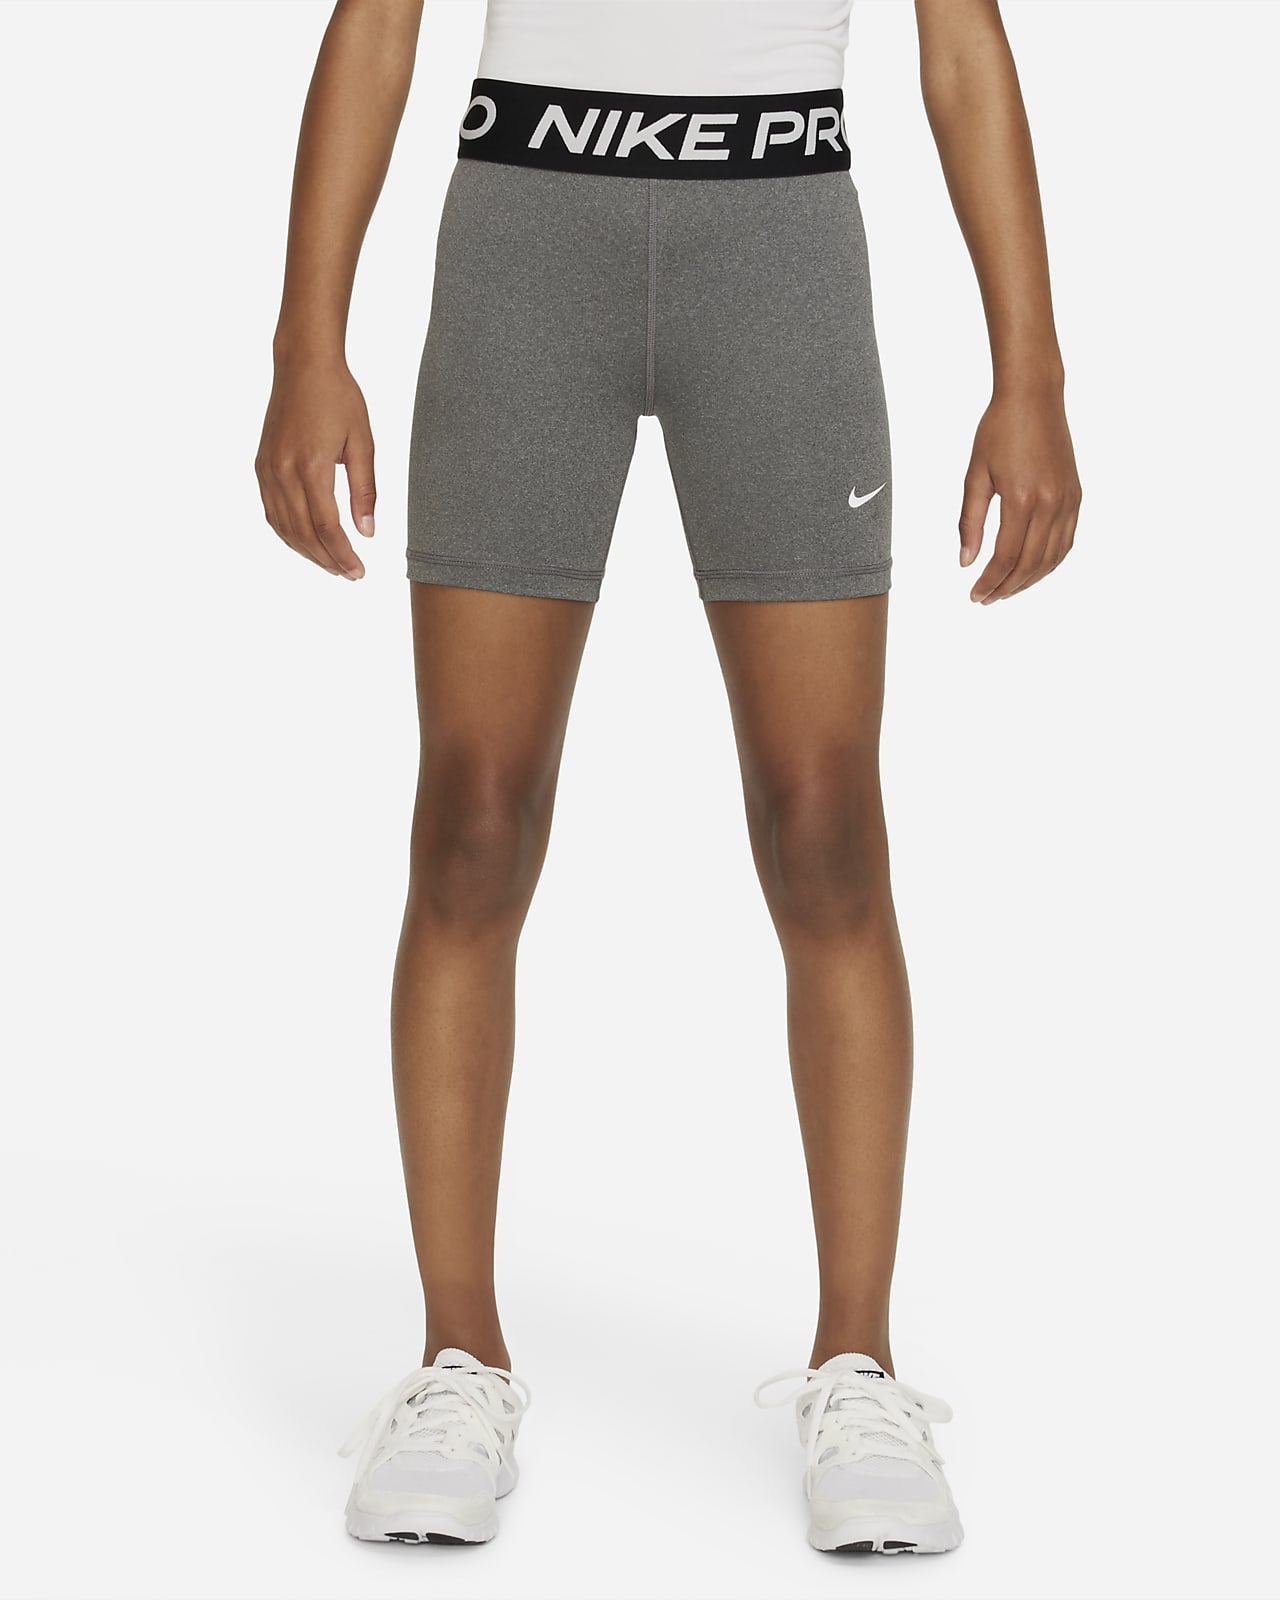 Nike shorts  Cheap nike pros, Nike pros, Workout clothes